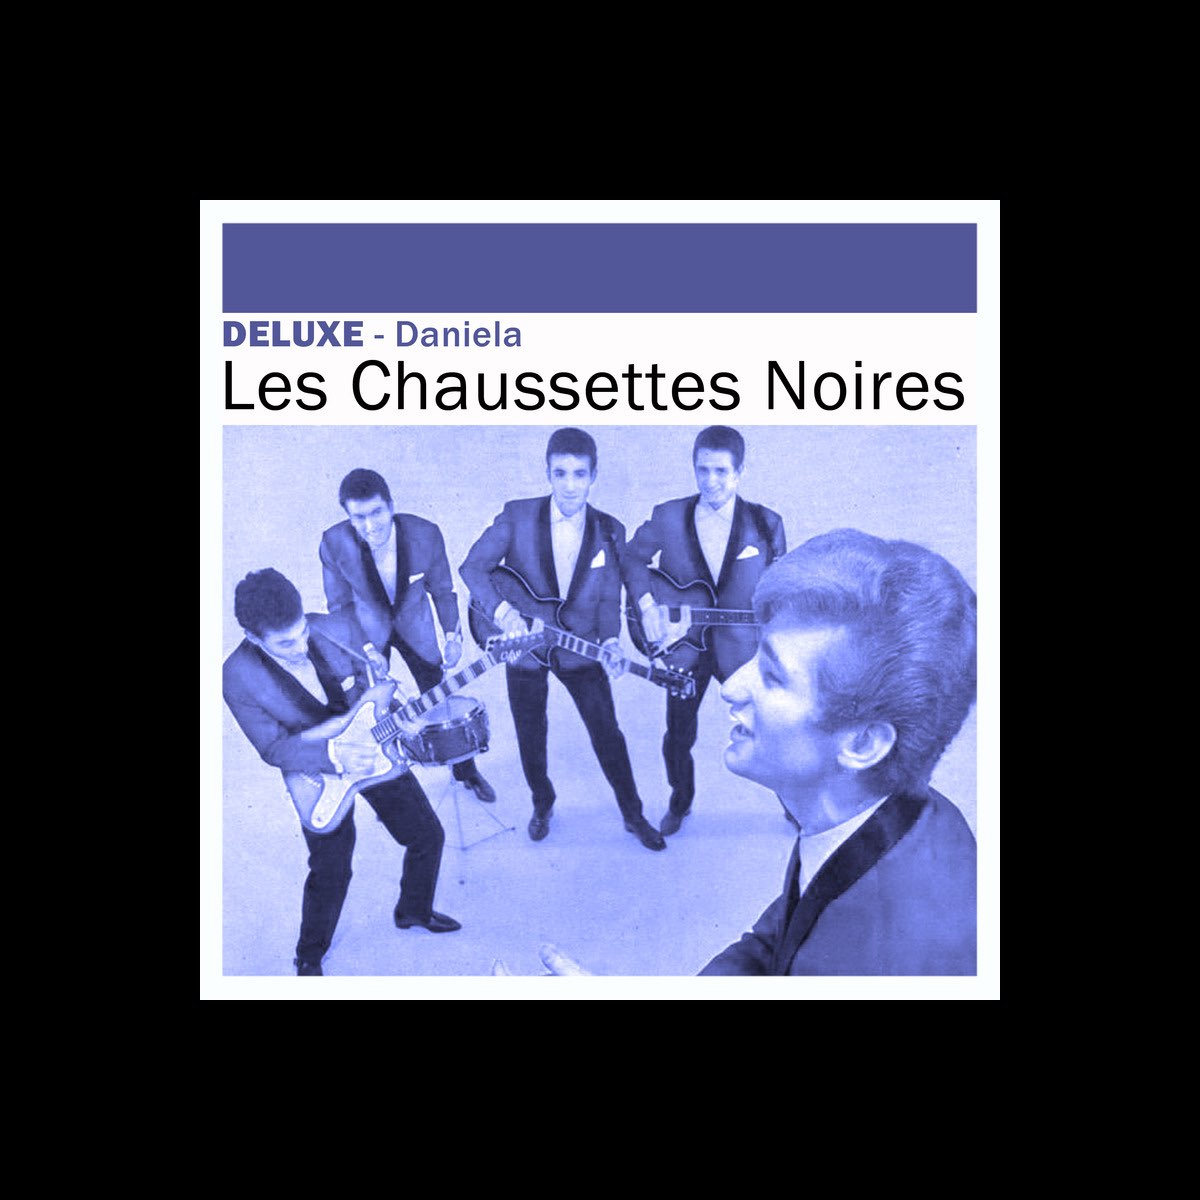 Deluxe : Daniela - Album by Les Chaussettes Noires - Apple Music